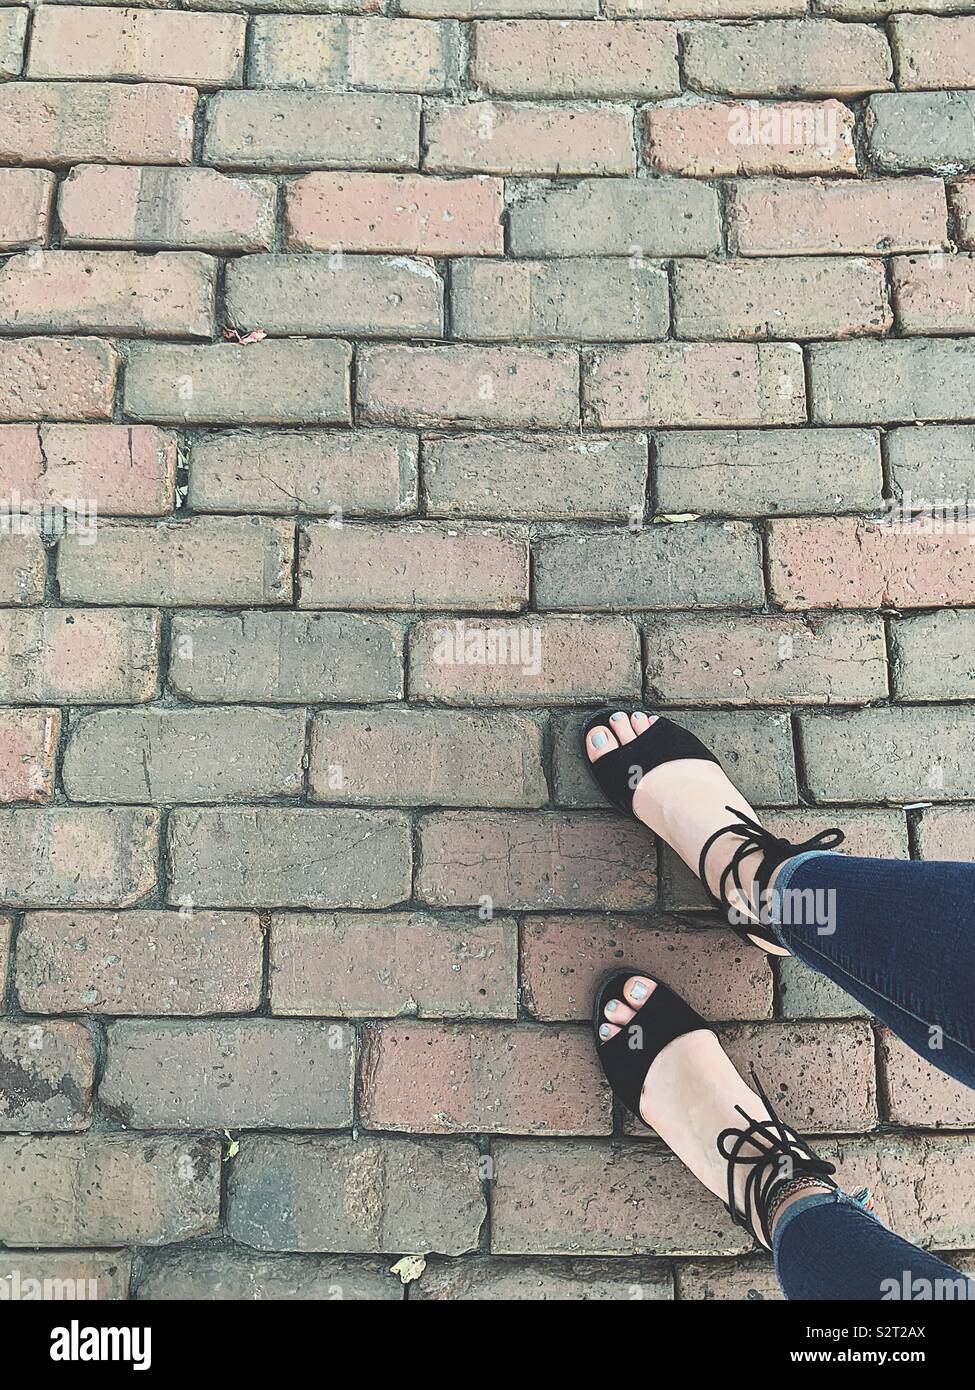 Mädchen Füße in Sandalen laufen auf Stein Pflaster Stockfotografie - Alamy